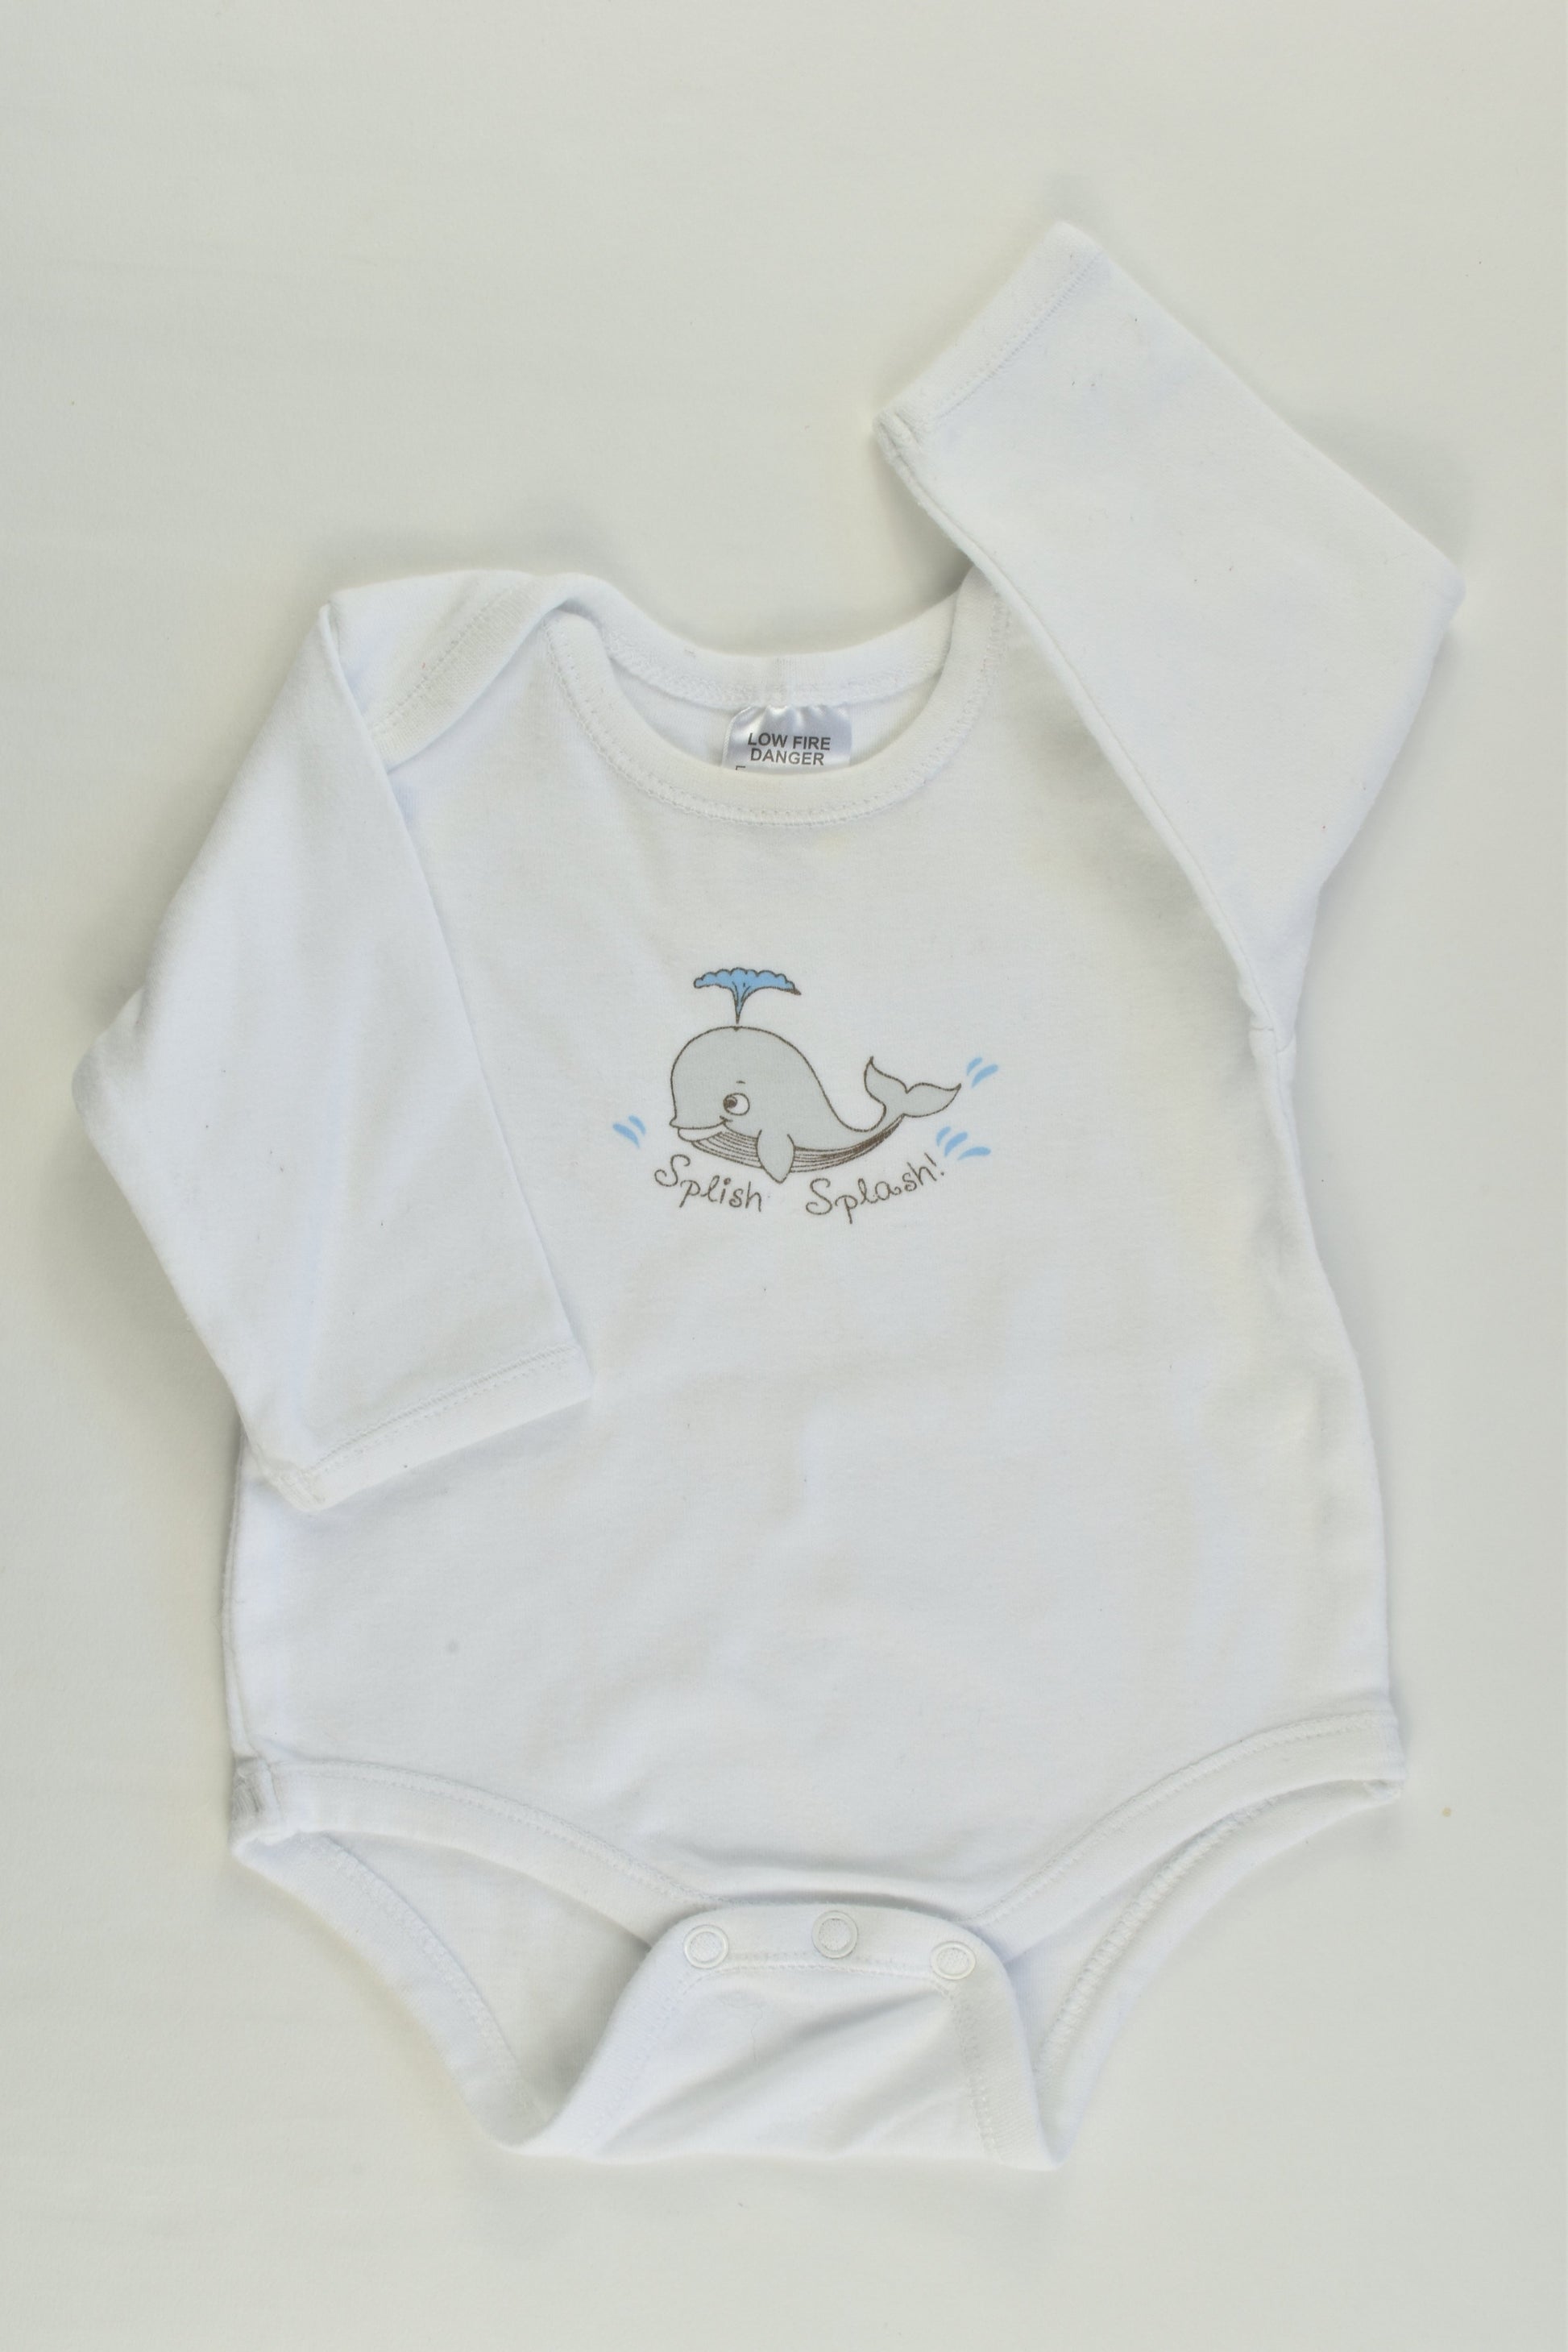 Best & Less Size 000 (0-3 months) Whale Bodysuit